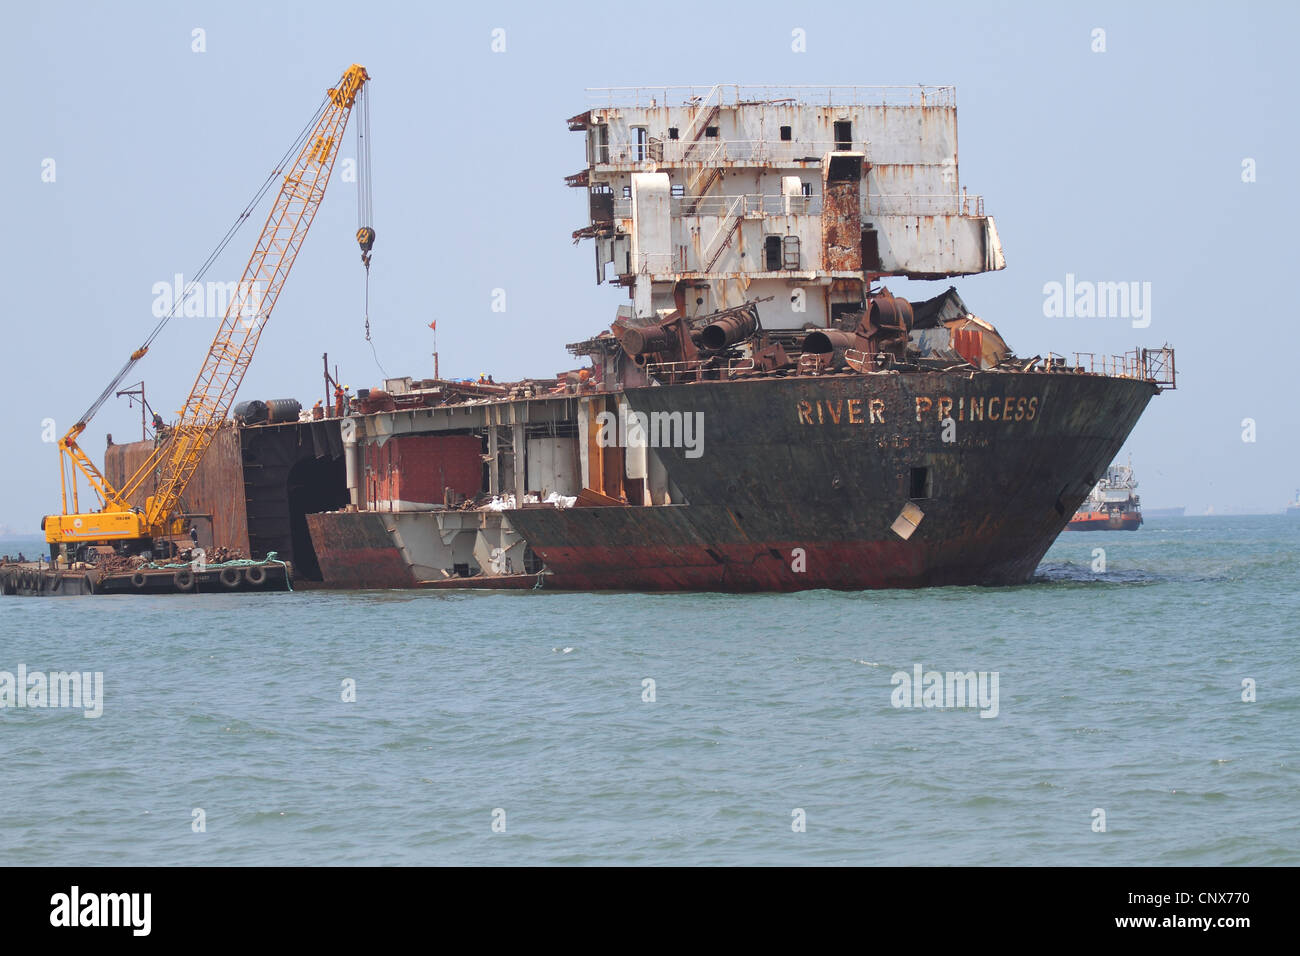 Le démantèlement de navires Candolin offshore Inde Goa Banque D'Images